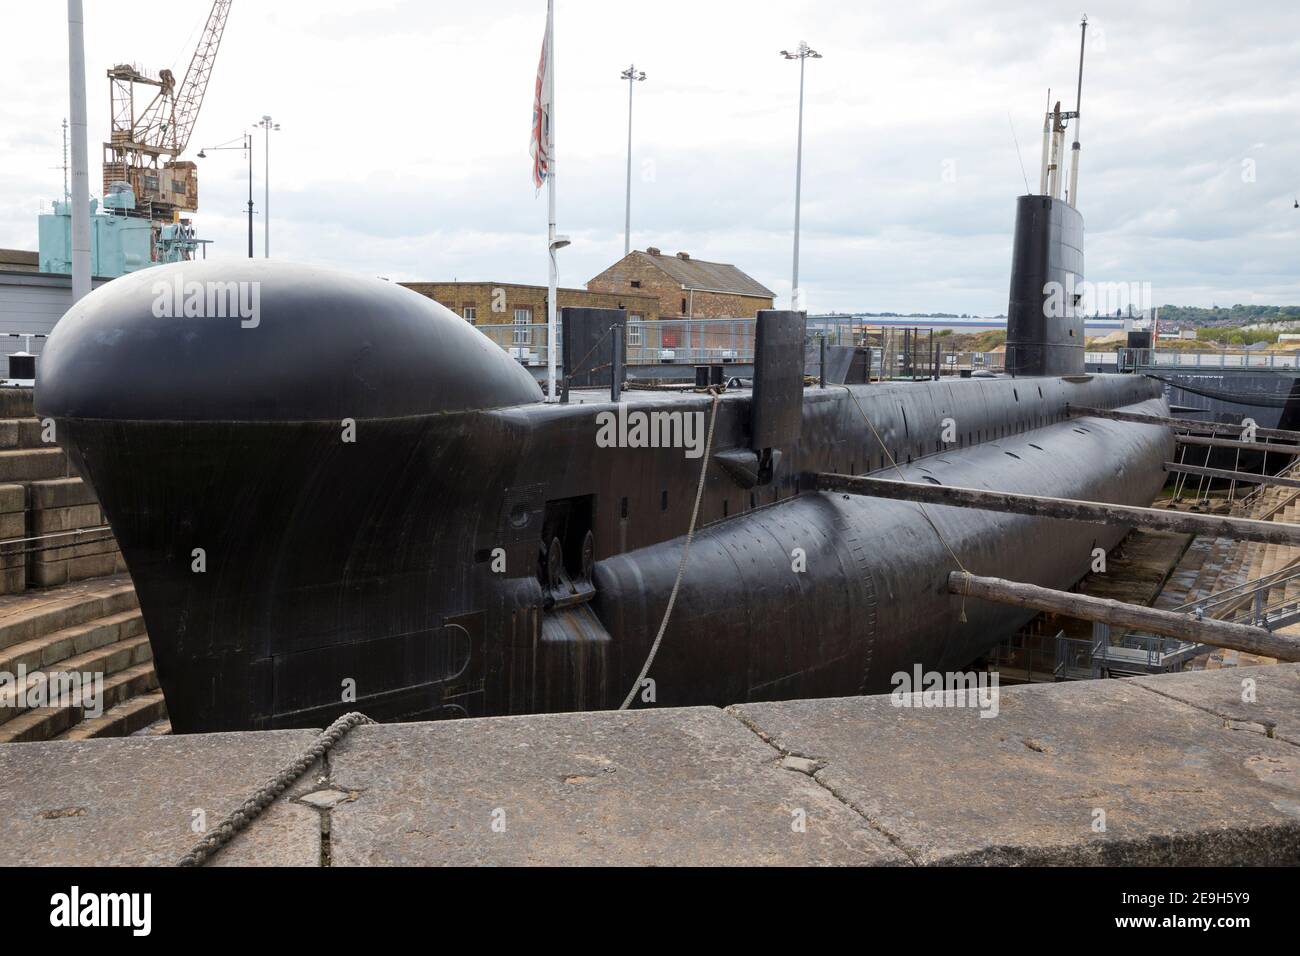 HM sous-marin Ocelot, un sous-marin de la Royal Navy de classe Oberon. Le  bateau diesel - électrique est maintenant exposé en quai sec à l'historique  Dockyard / Dockyards Chatham dans le Kent.